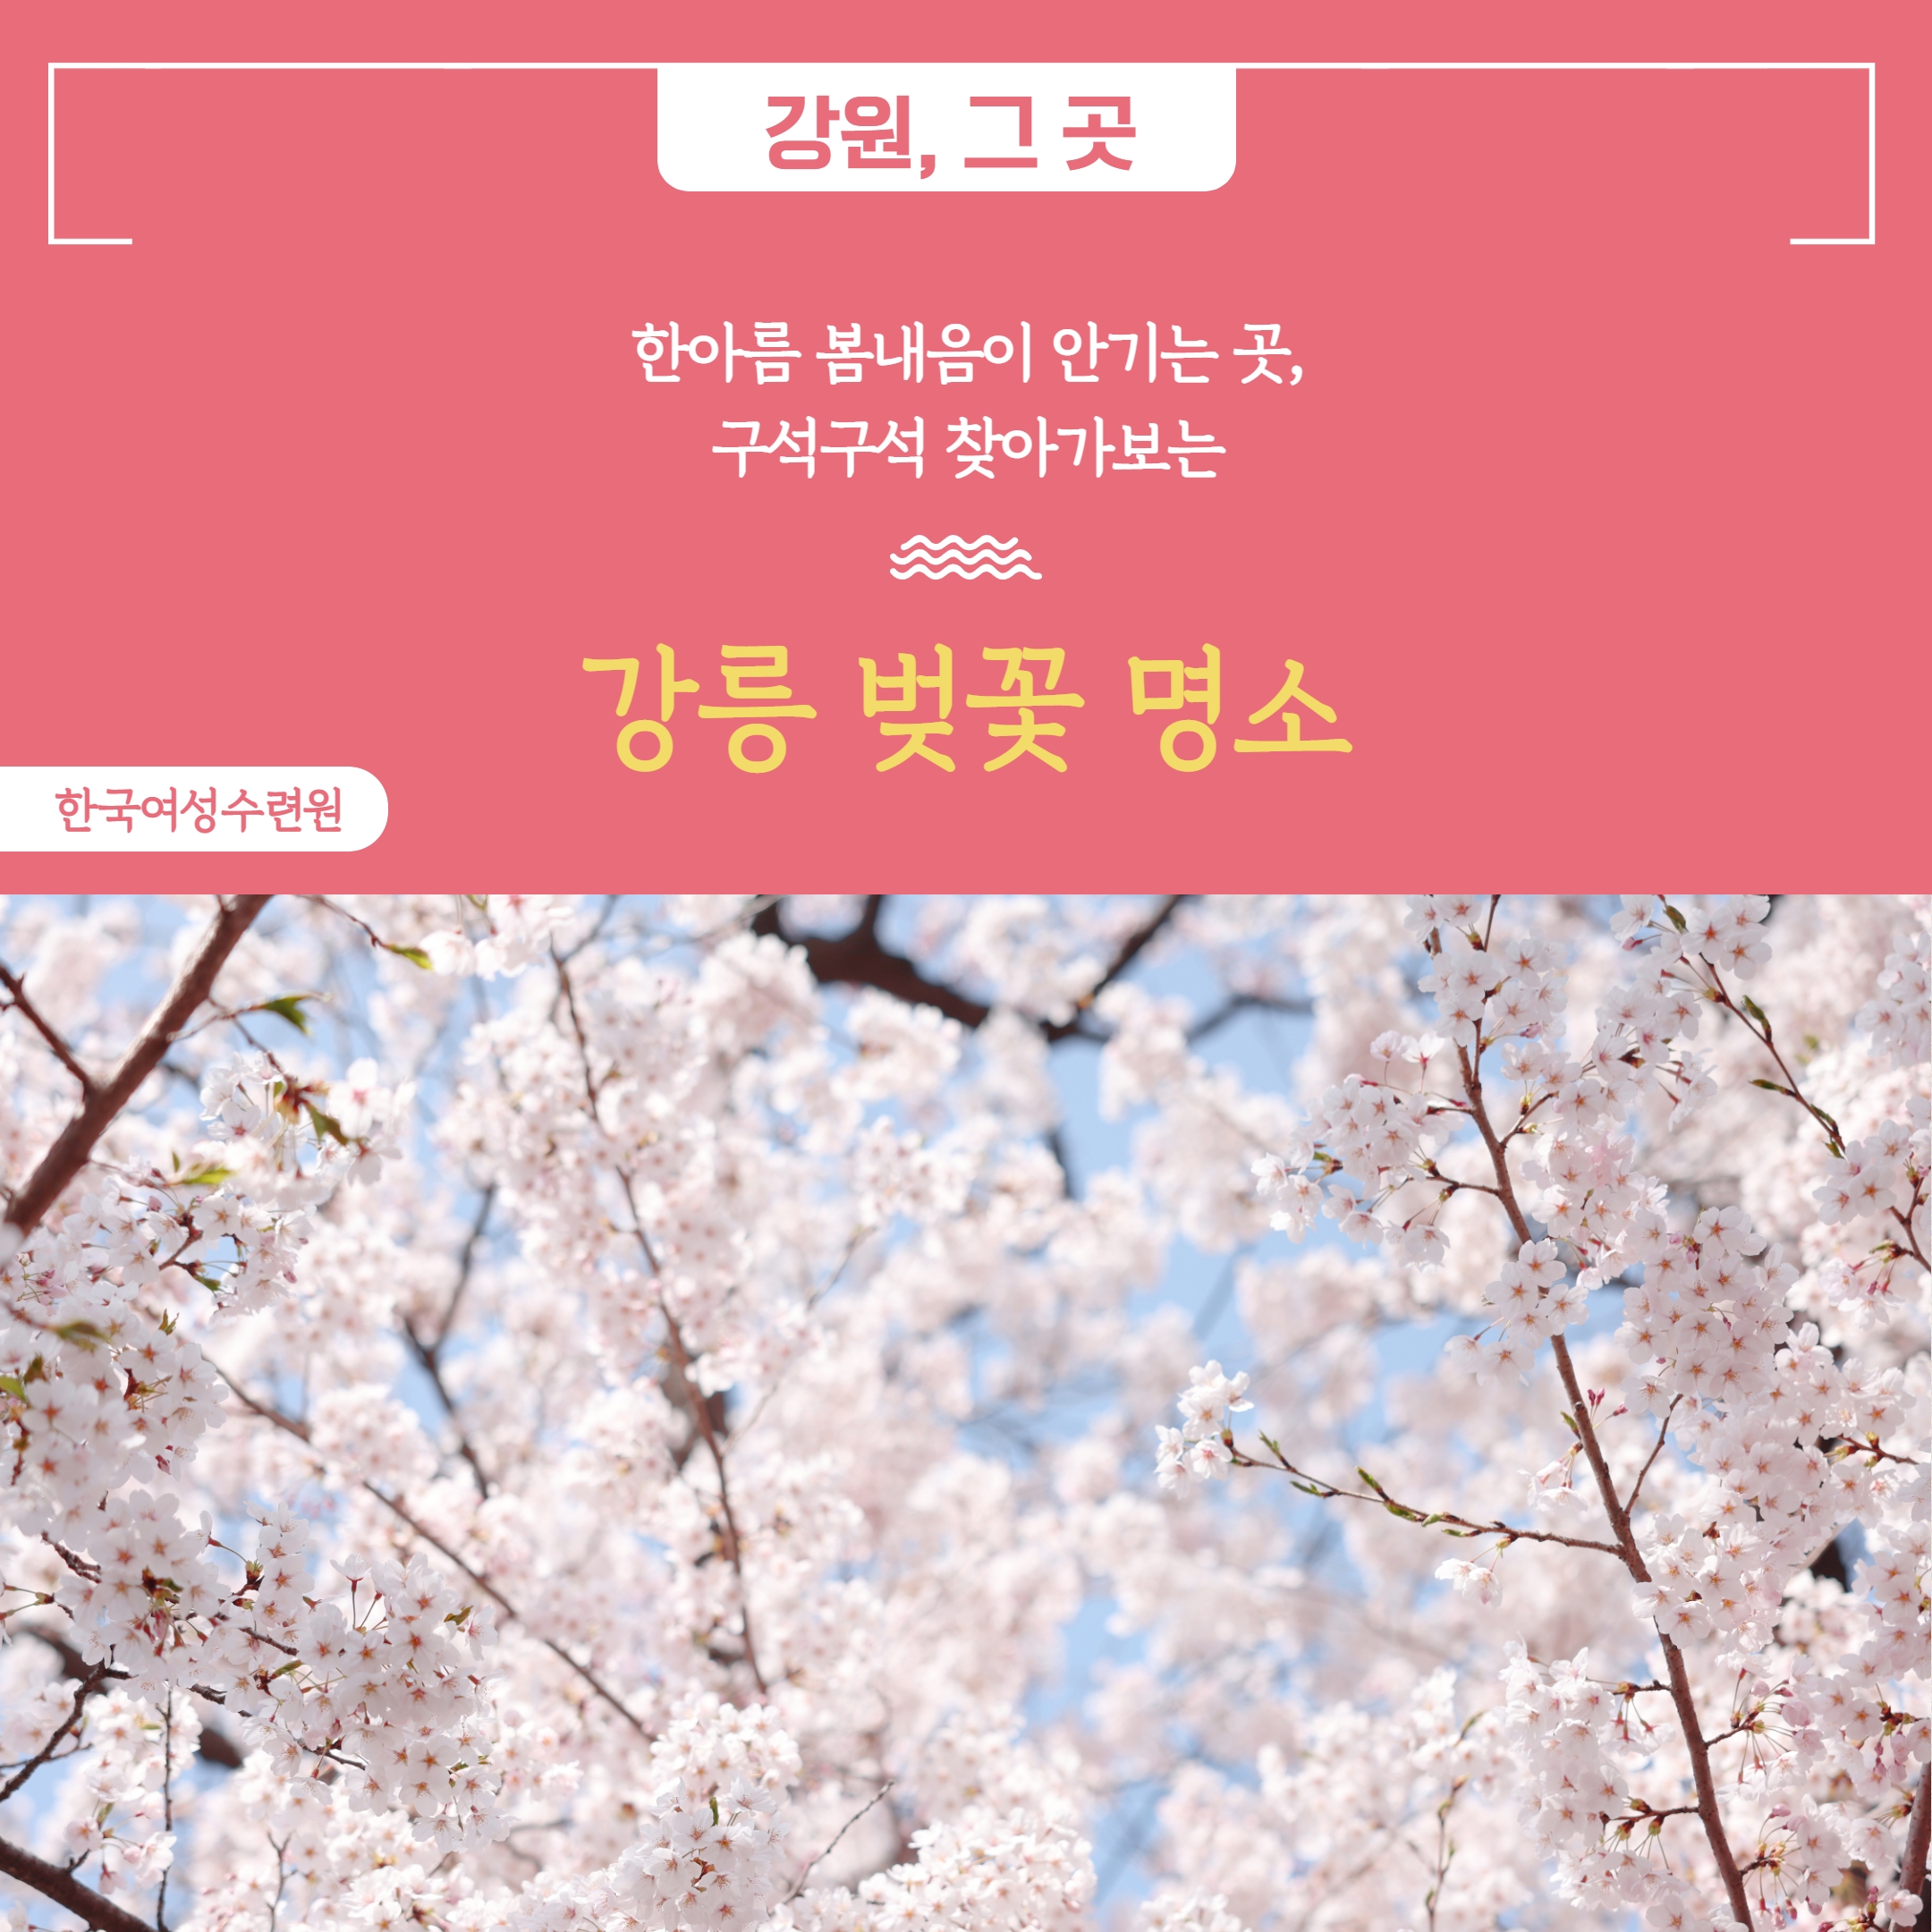 [카드뉴스] 한아름 봄내음이 안기는 곳, 구석구석 찾아가보는 강릉 벚꽃 명소